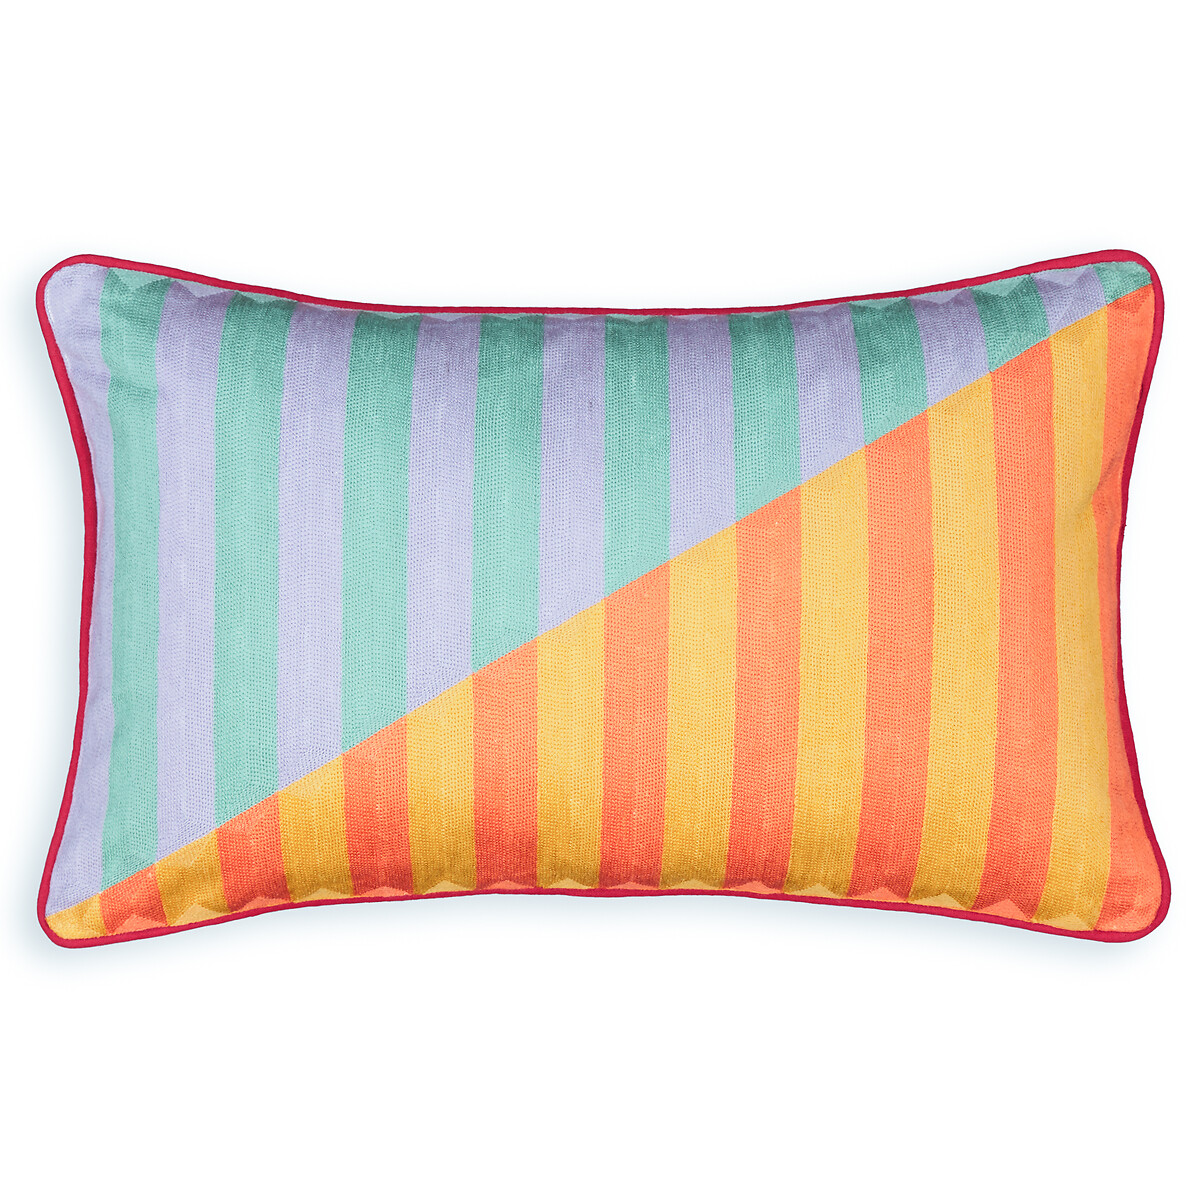 Чехол на подушку прямоугольный Dulang  50 x 30 см разноцветный LaRedoute, размер 50 x 30 см